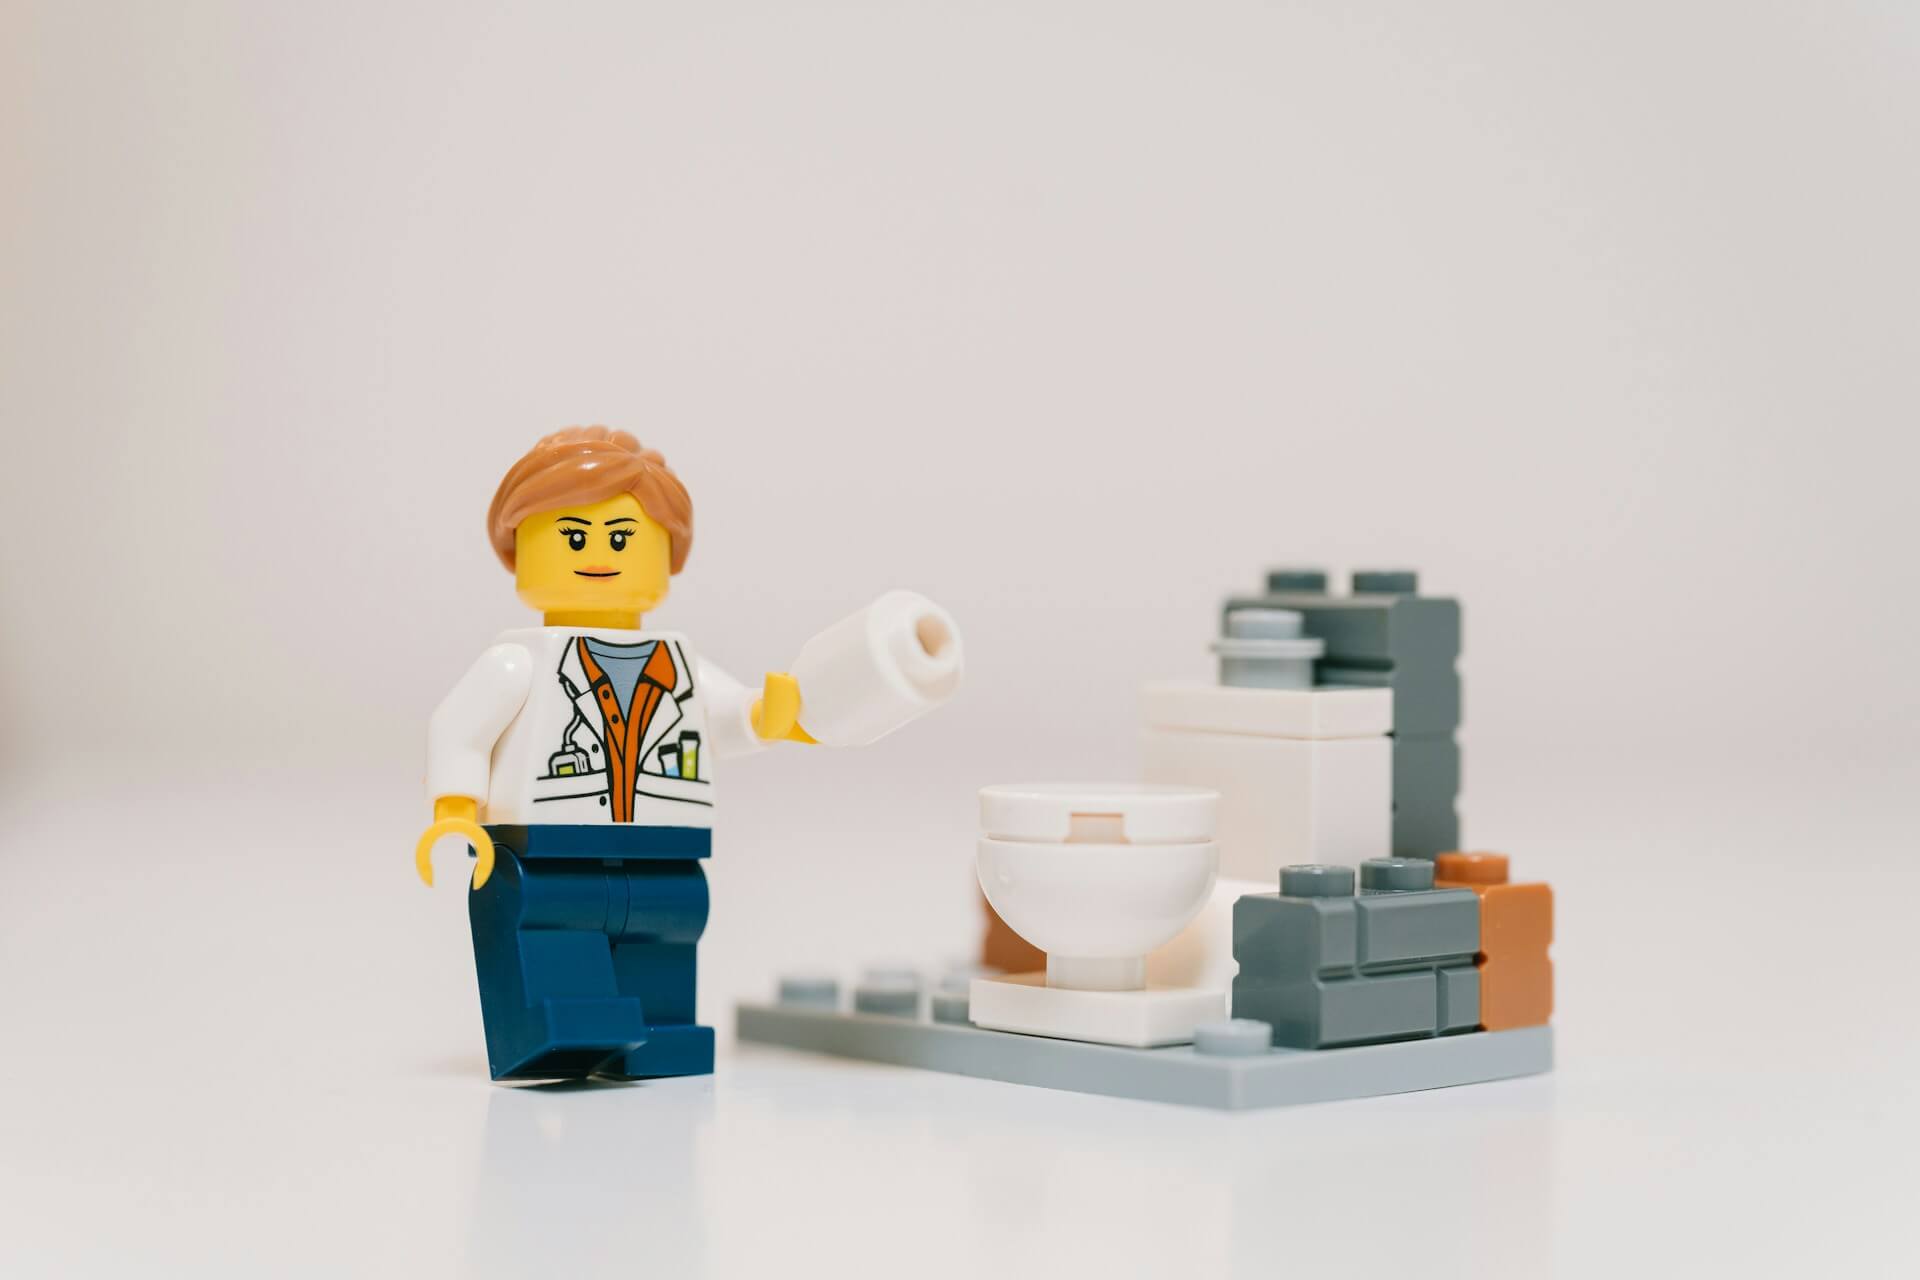 Lego handyman holding toilet paper next to a toilet